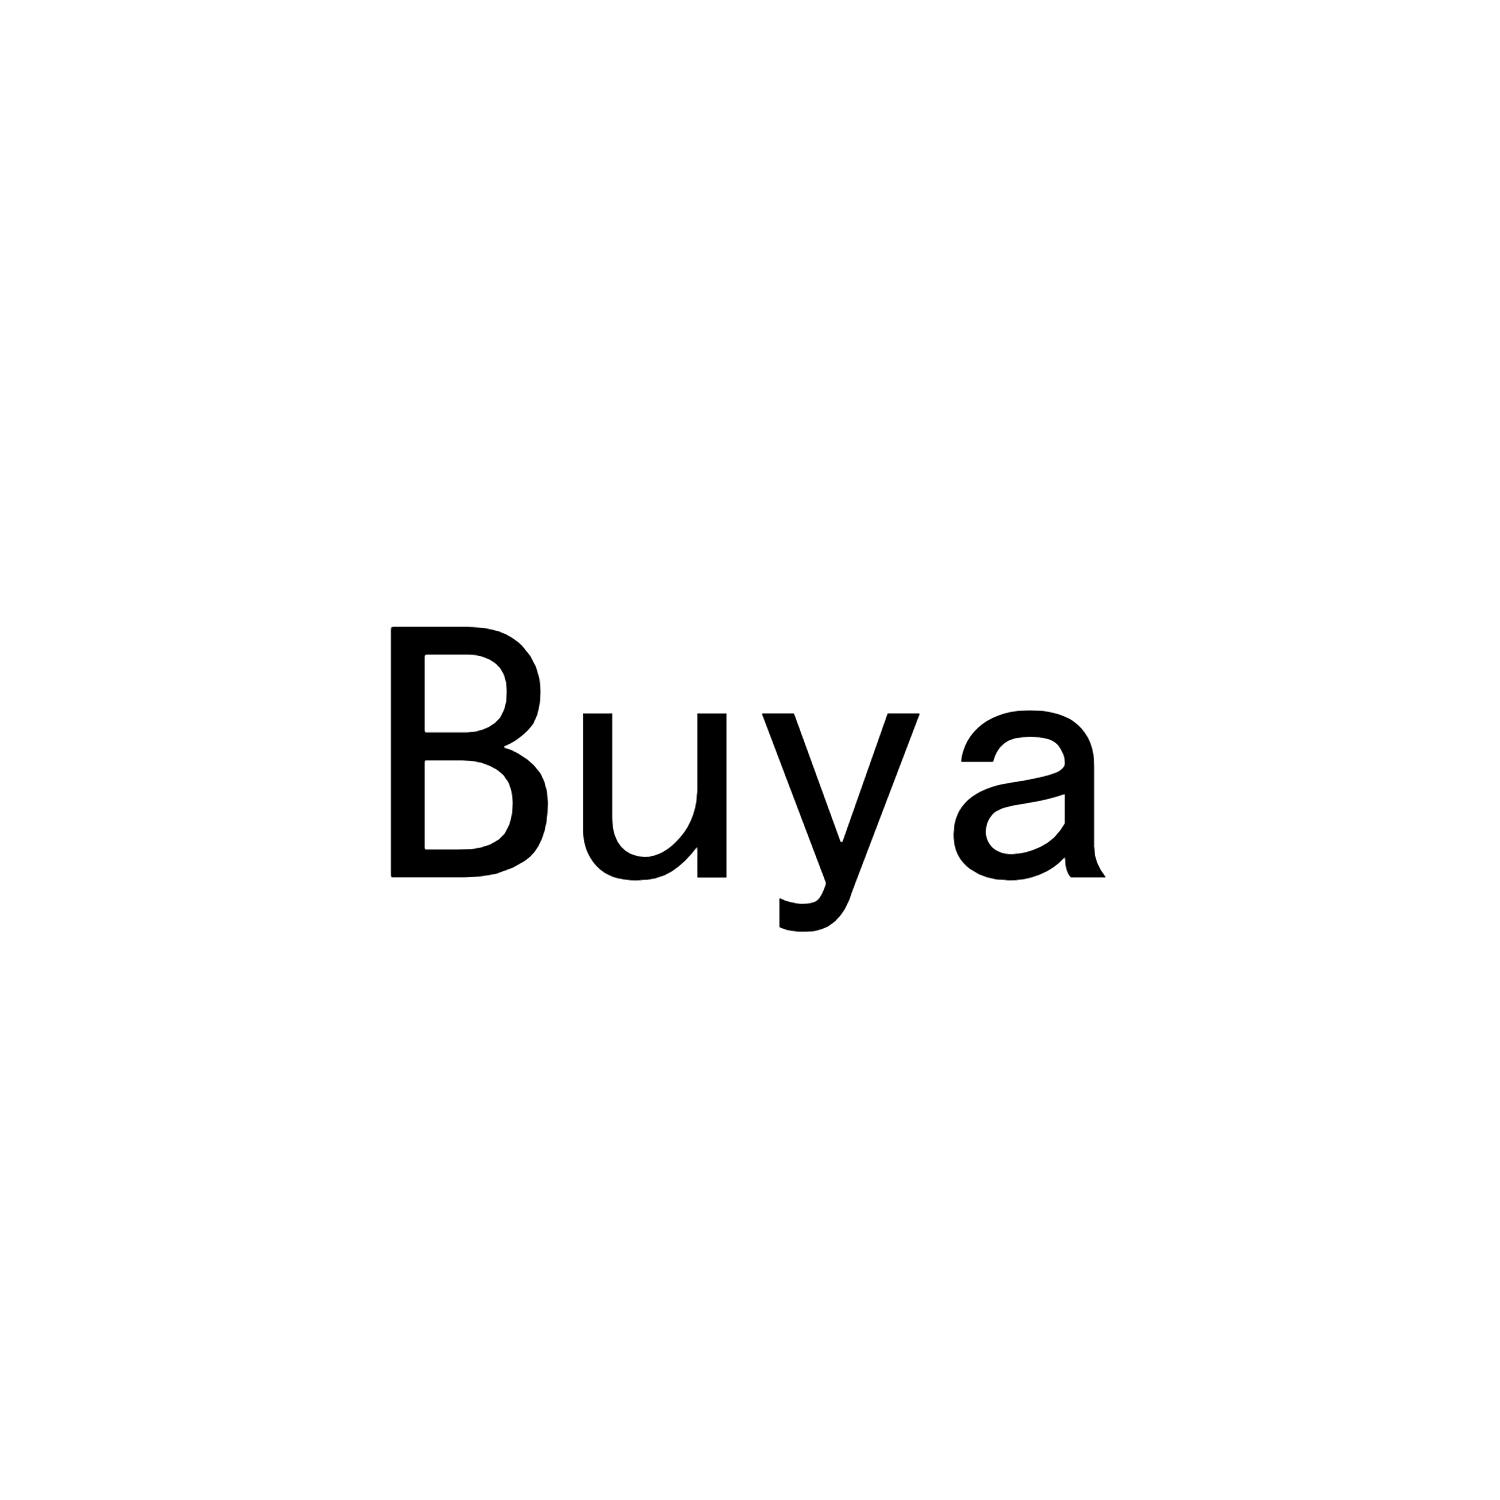 BUYA